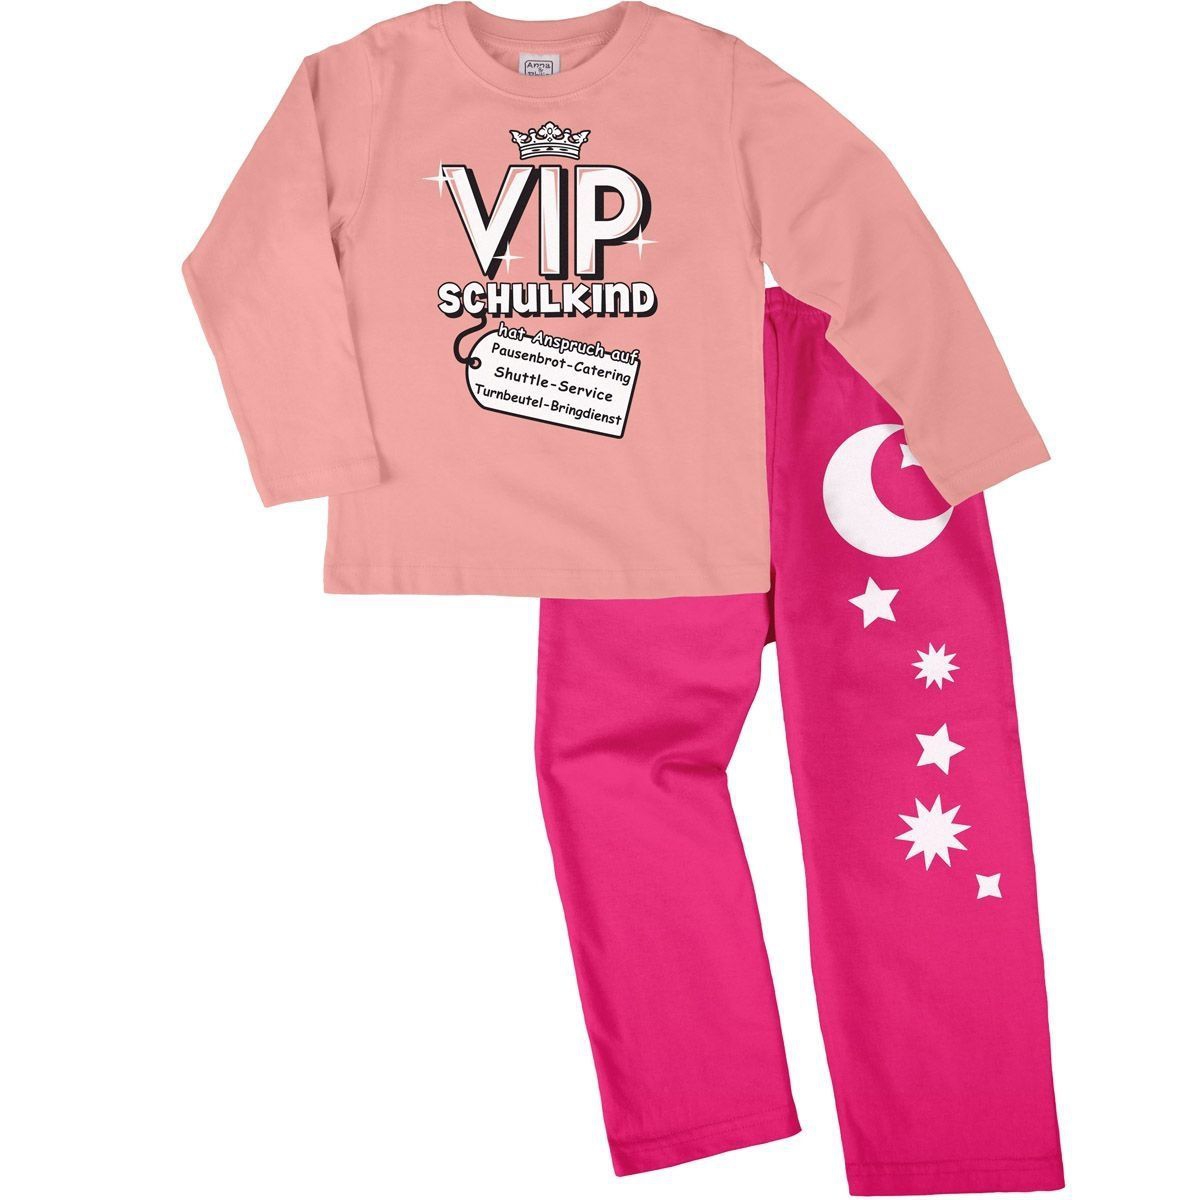 VIP Schulkind Pyjama Set rosa / pink 122 / 128